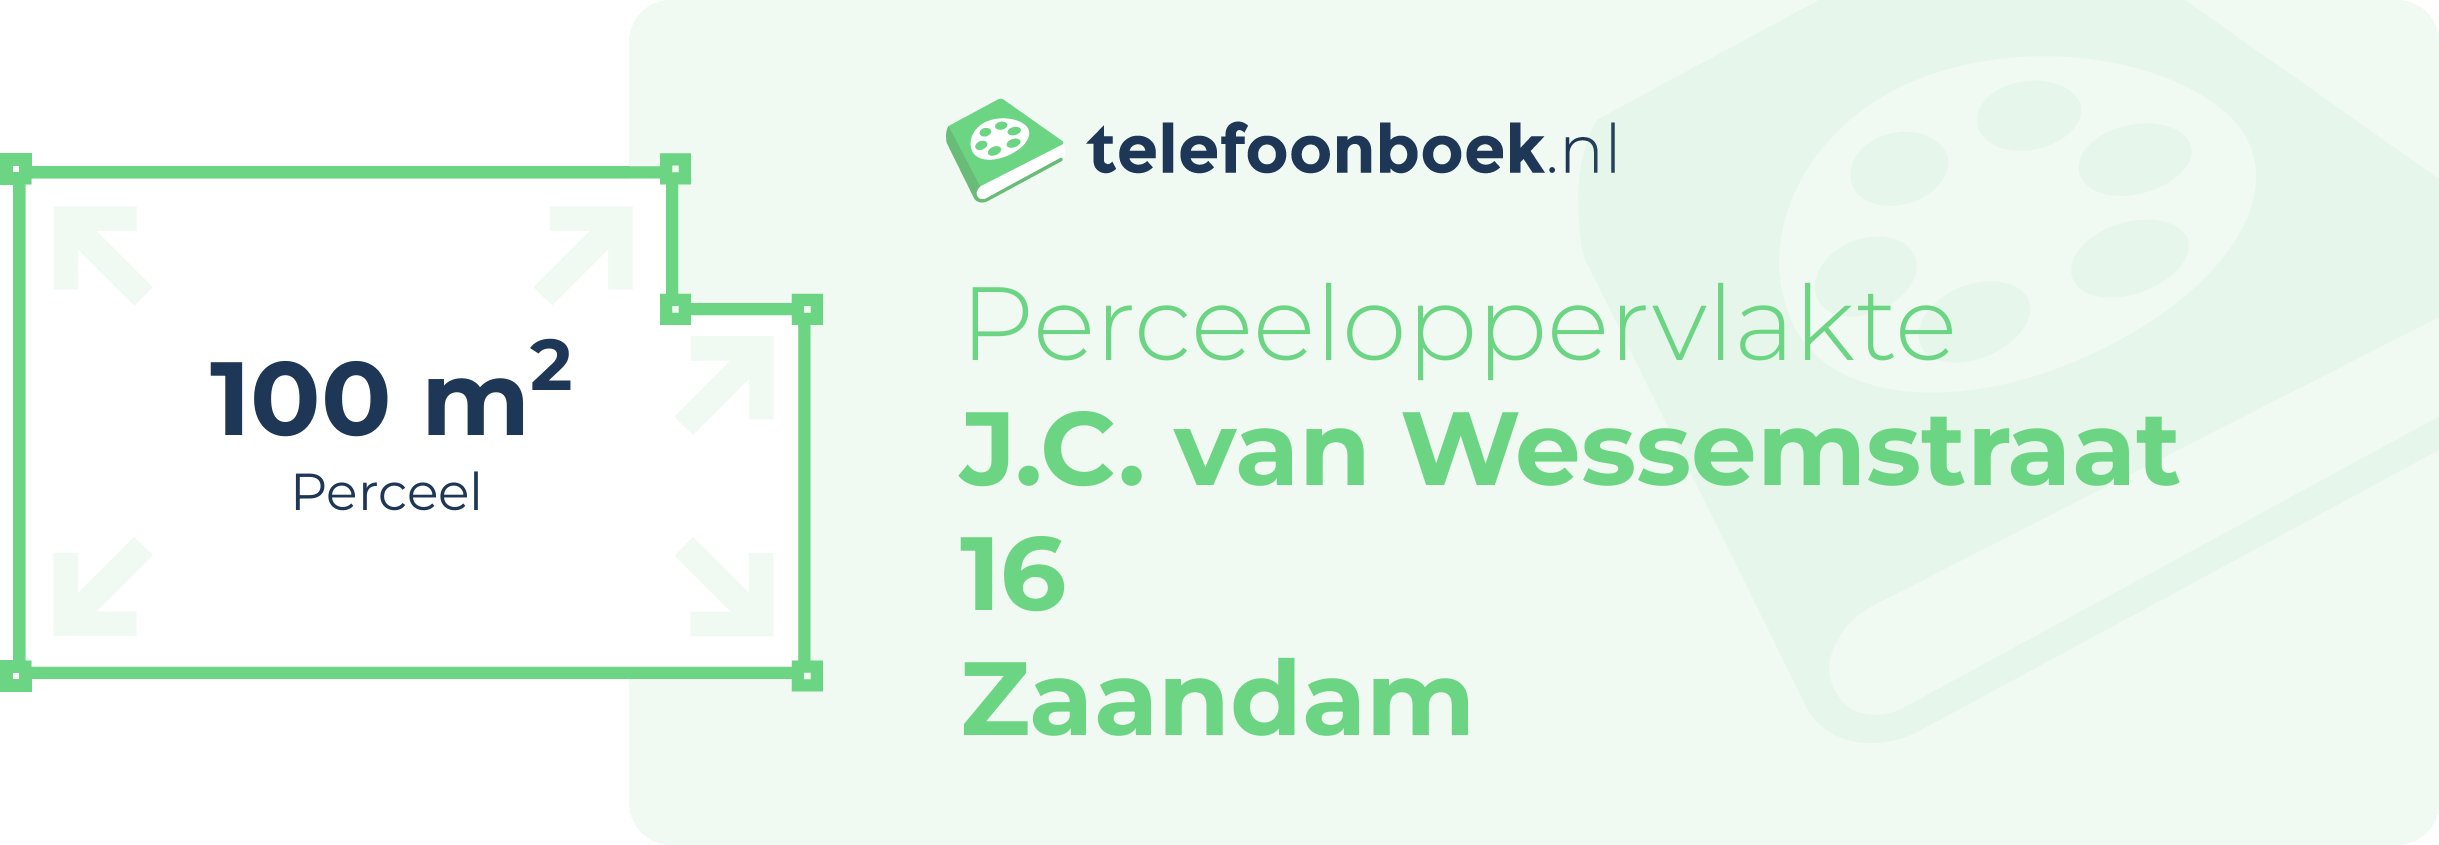 Perceeloppervlakte J.C. Van Wessemstraat 16 Zaandam